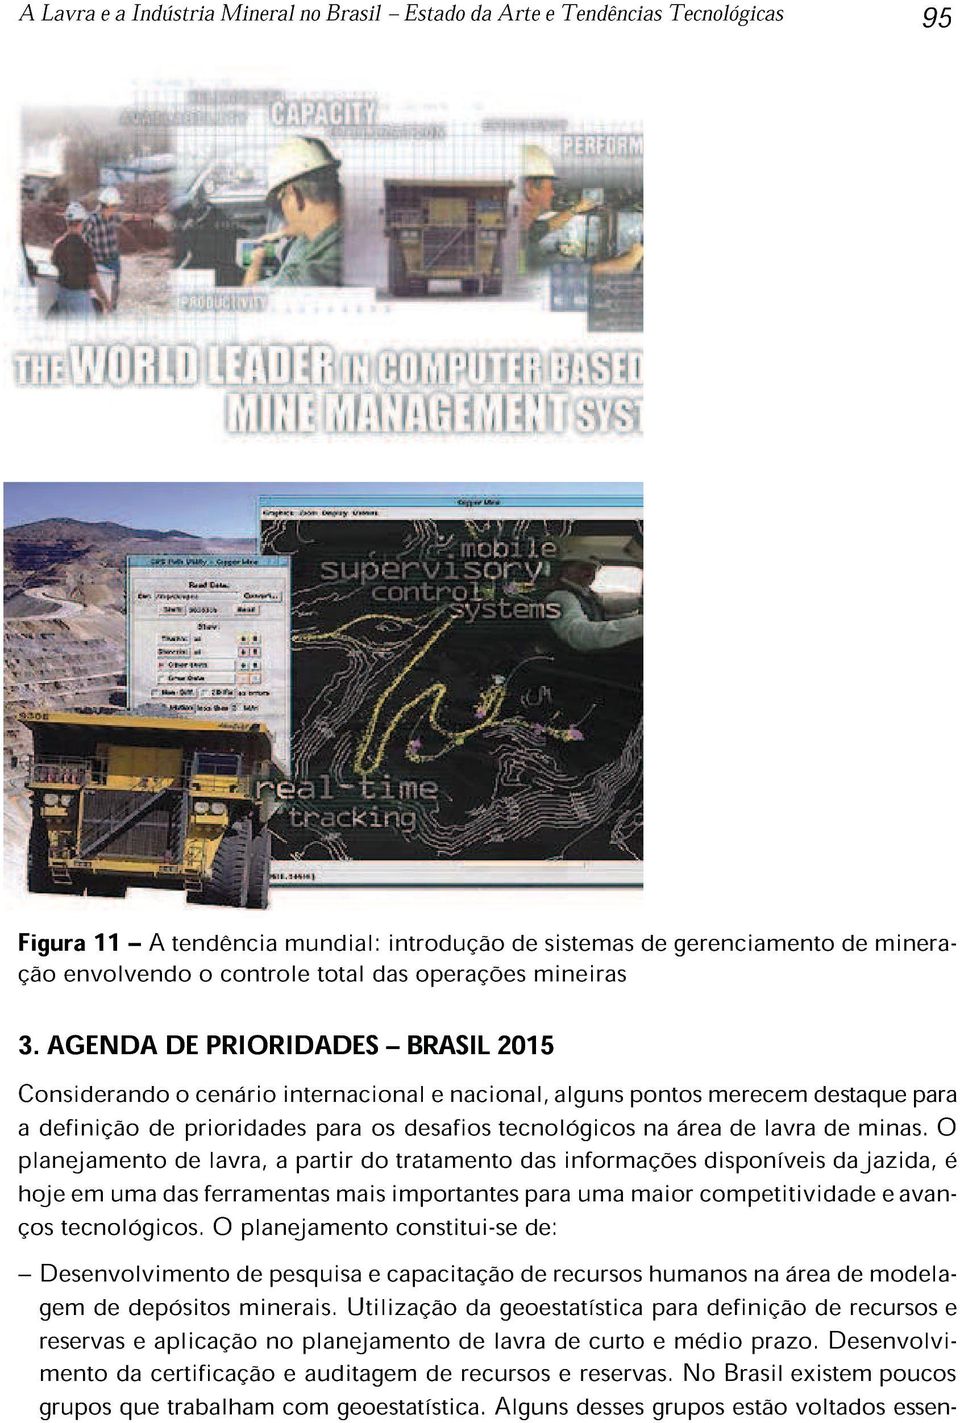 AGENDA DE PRIORIDADES BRASIL 2015 Considerando o cenário internacional e nacional, alguns pontos merecem destaque para a definição de prioridades para os desafios tecnológicos na área de lavra de